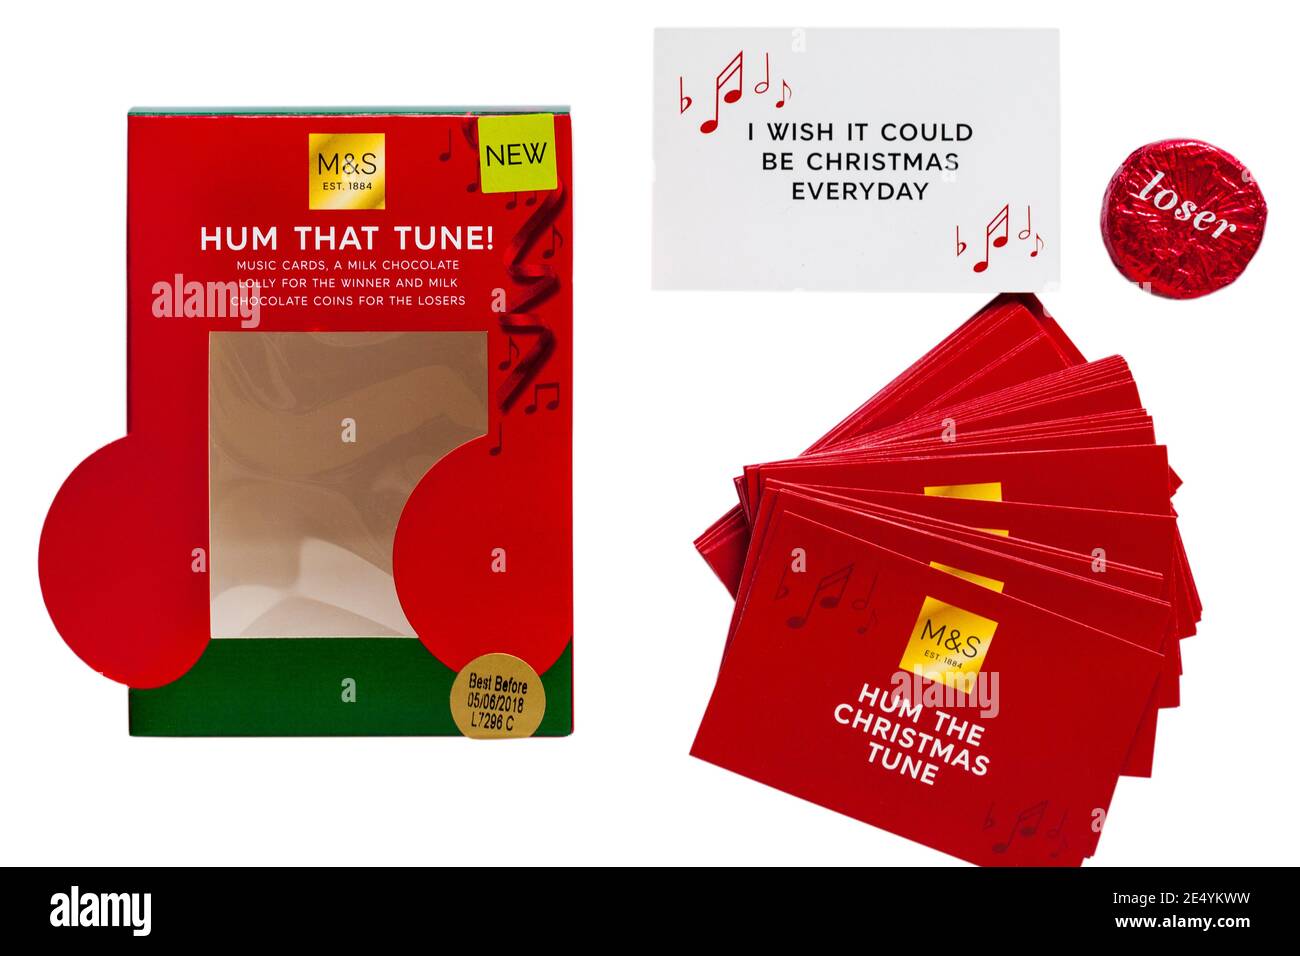 M&S Hum Tune juego con Hum the Christmas Tune tarjetas quitadas de la caja sobre fondo blanco - I Ojalá pudiera ser Navidad todos los días Foto de stock